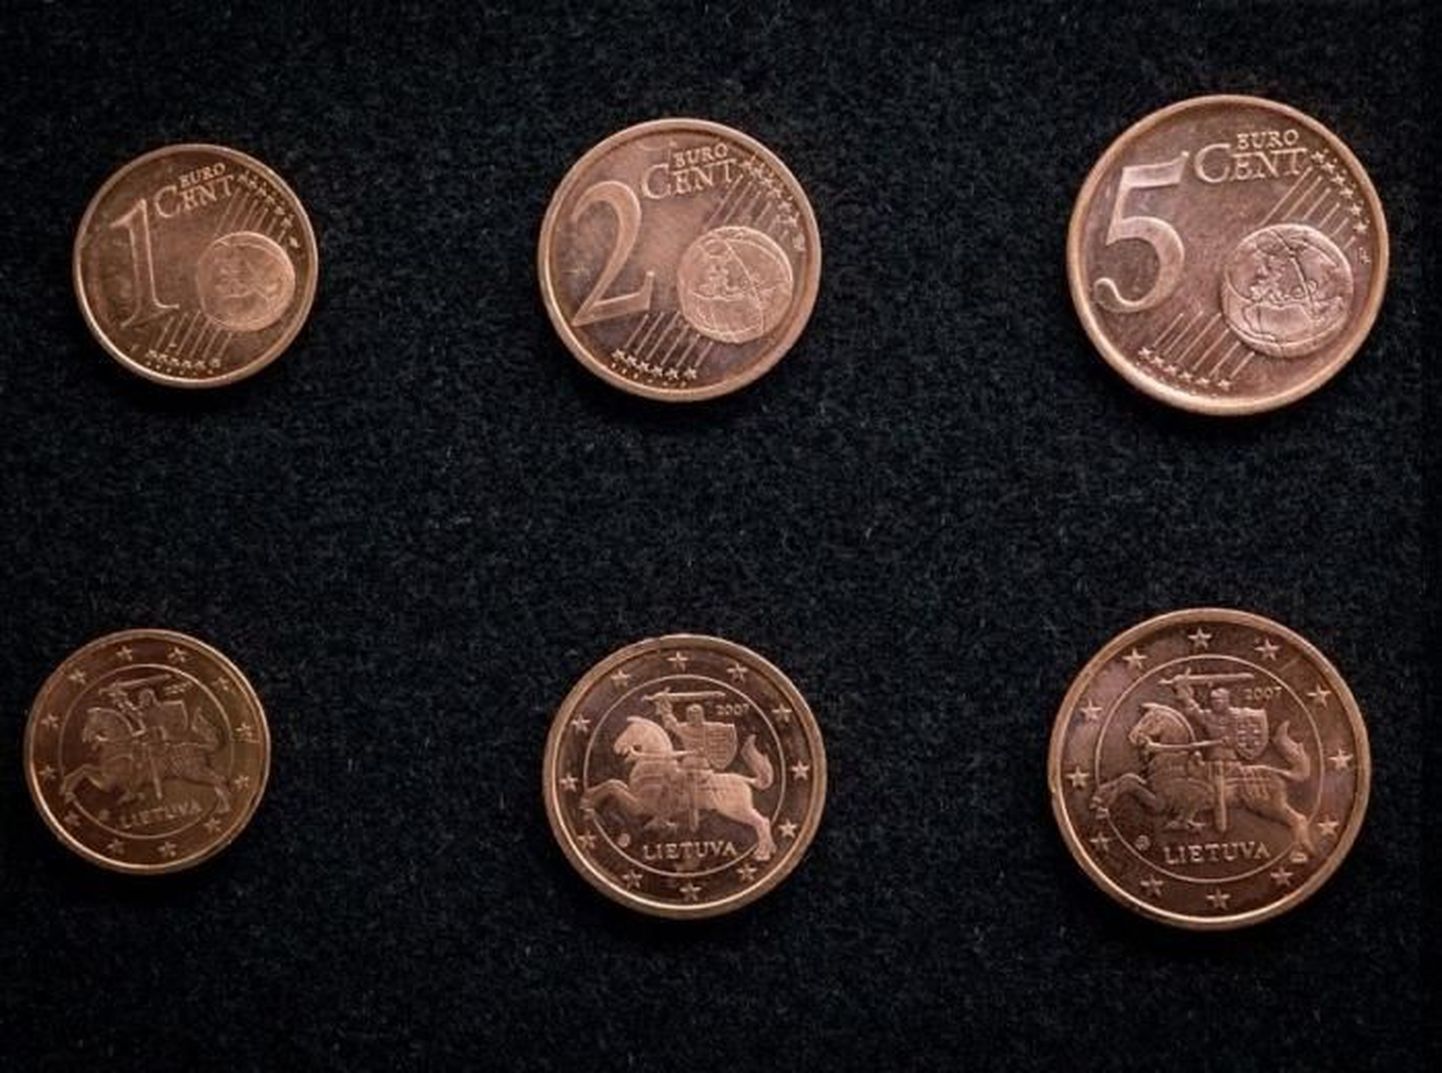 Leedu euromündid.